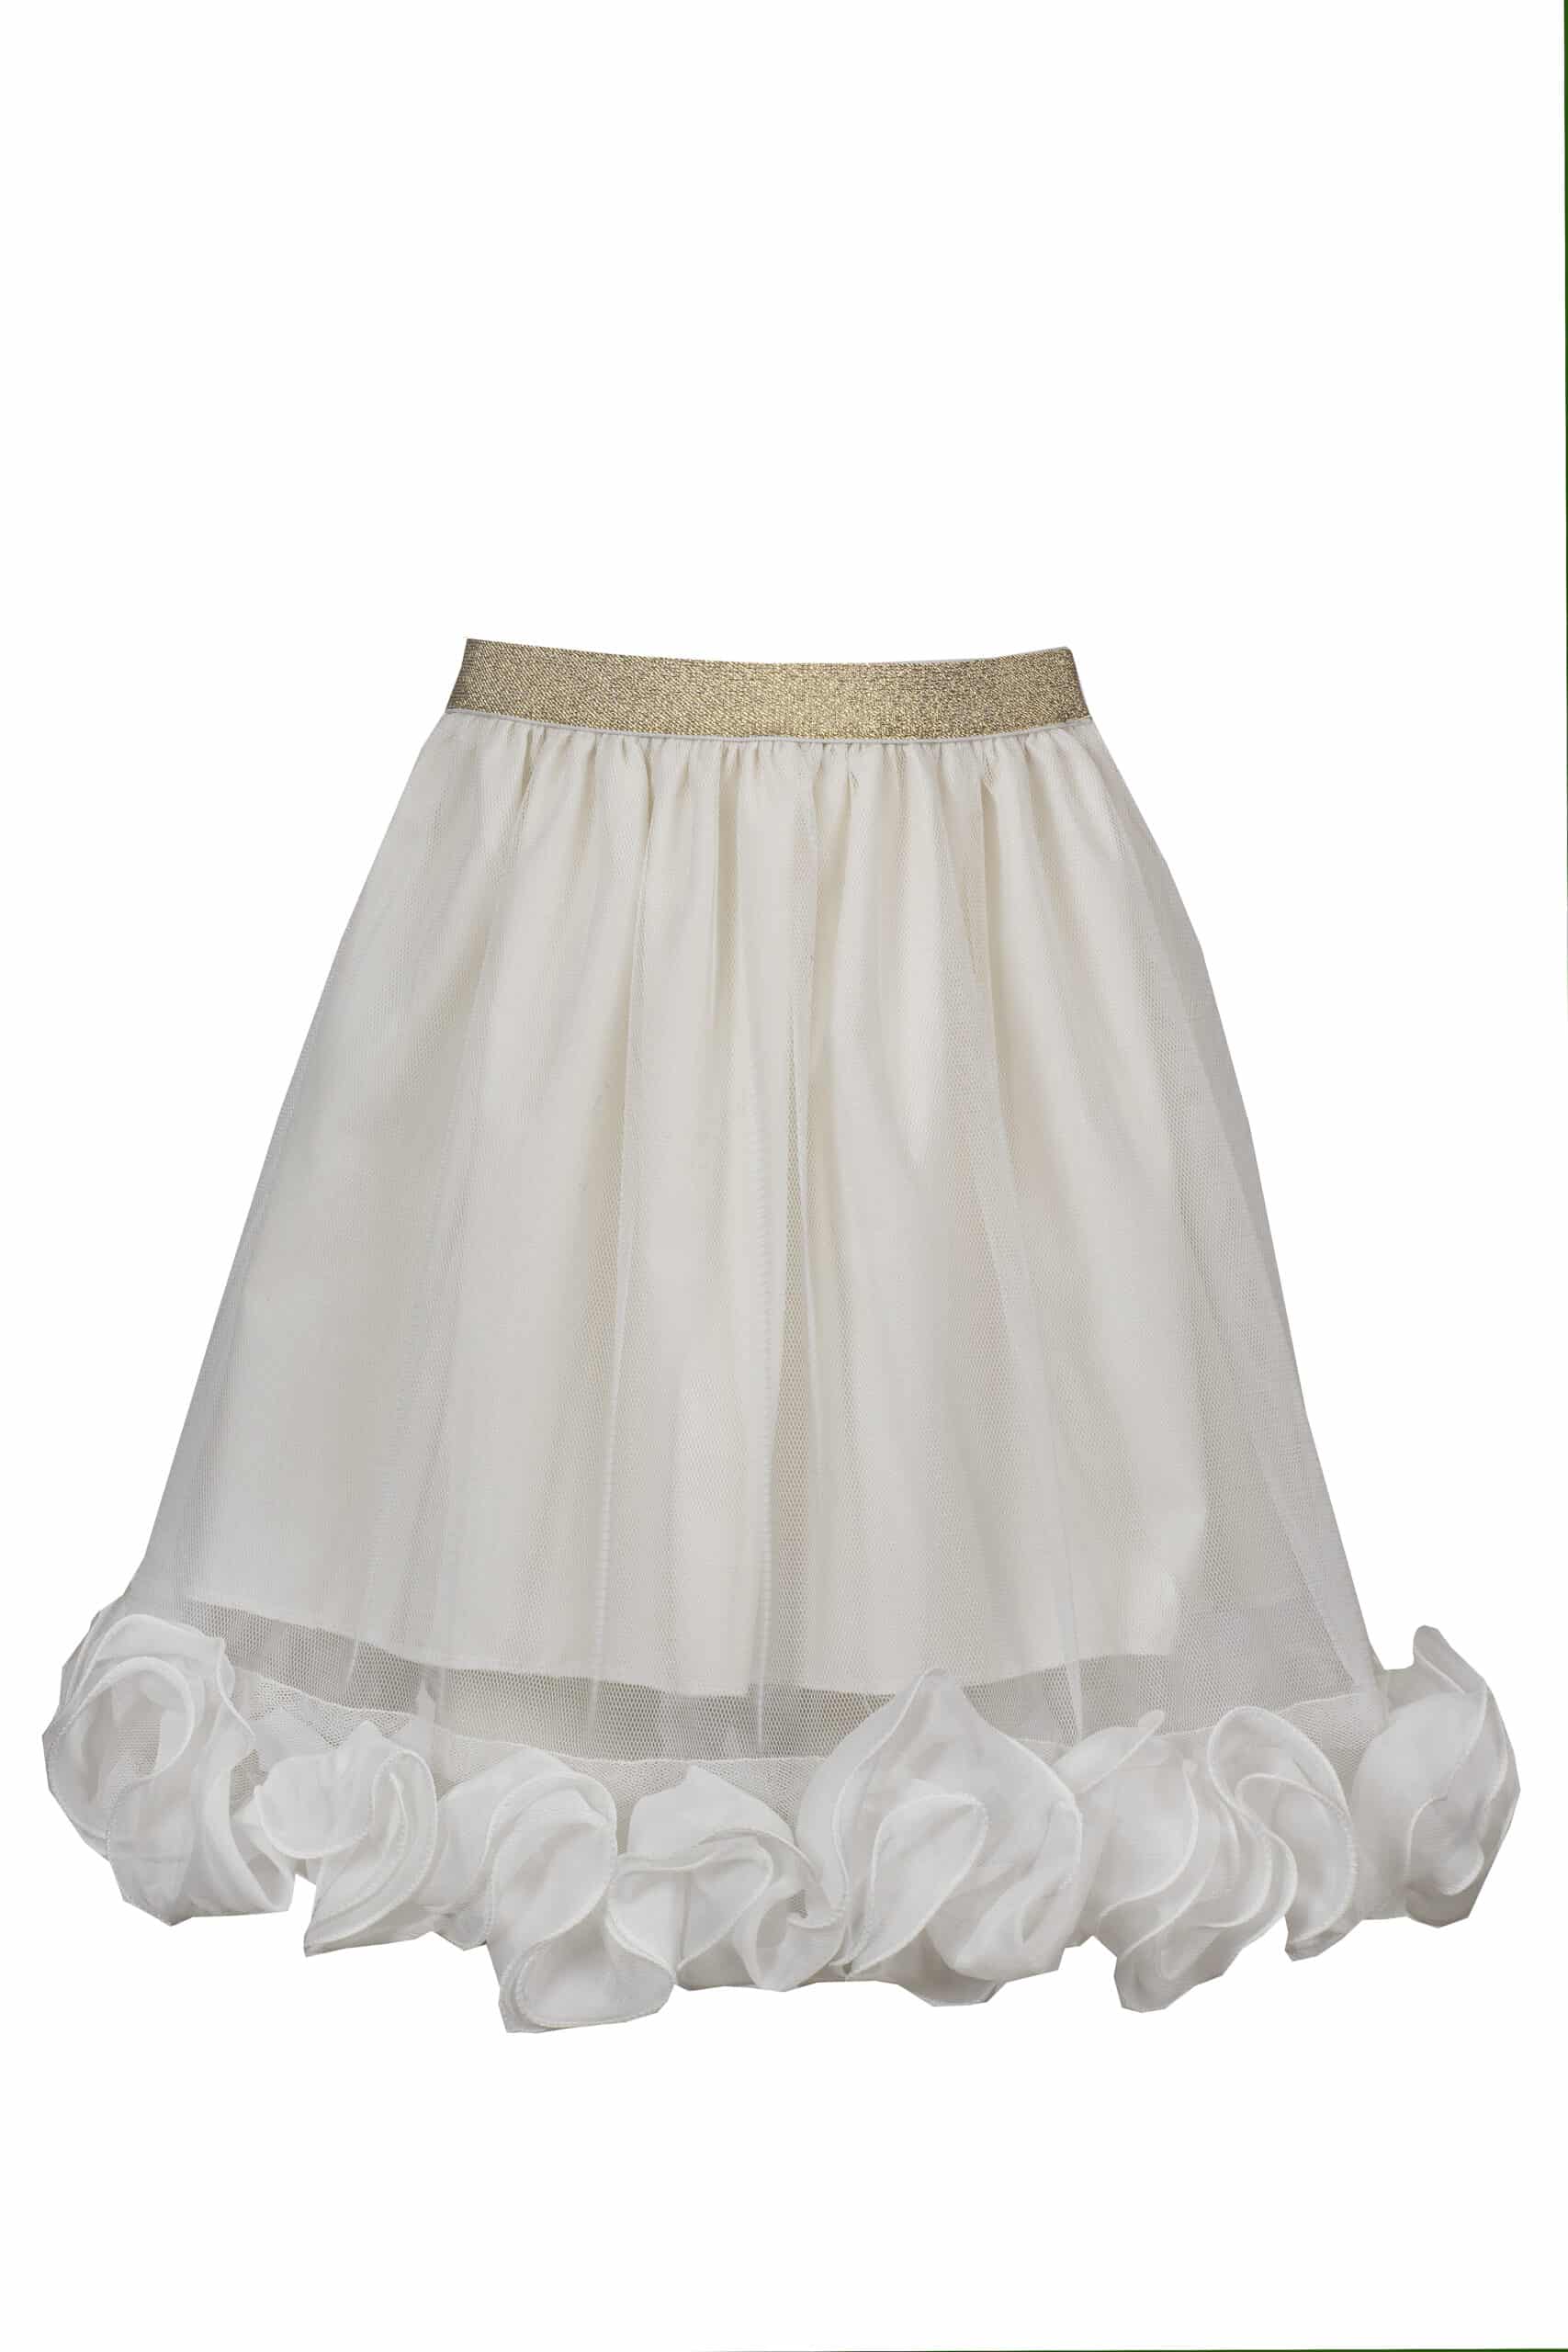 Παιδική Φούστα απο Τούλι Λευκή M&B FASHION 1865 - Emporio Shop